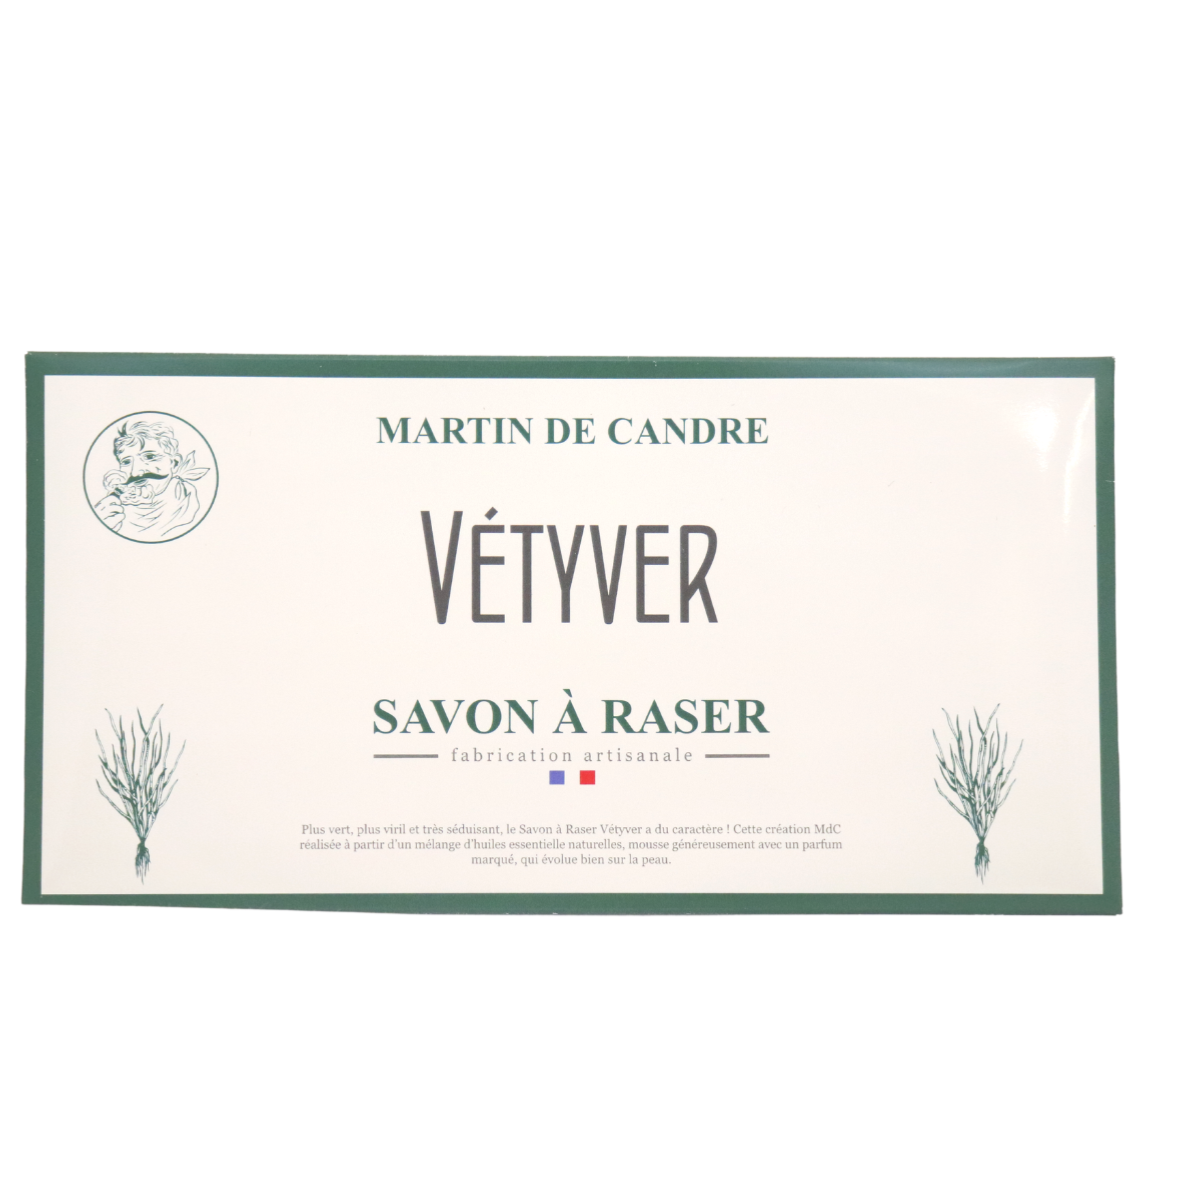 MARTIN DE CANDRE - Savon à raser - Feuille échantillon Vetyver